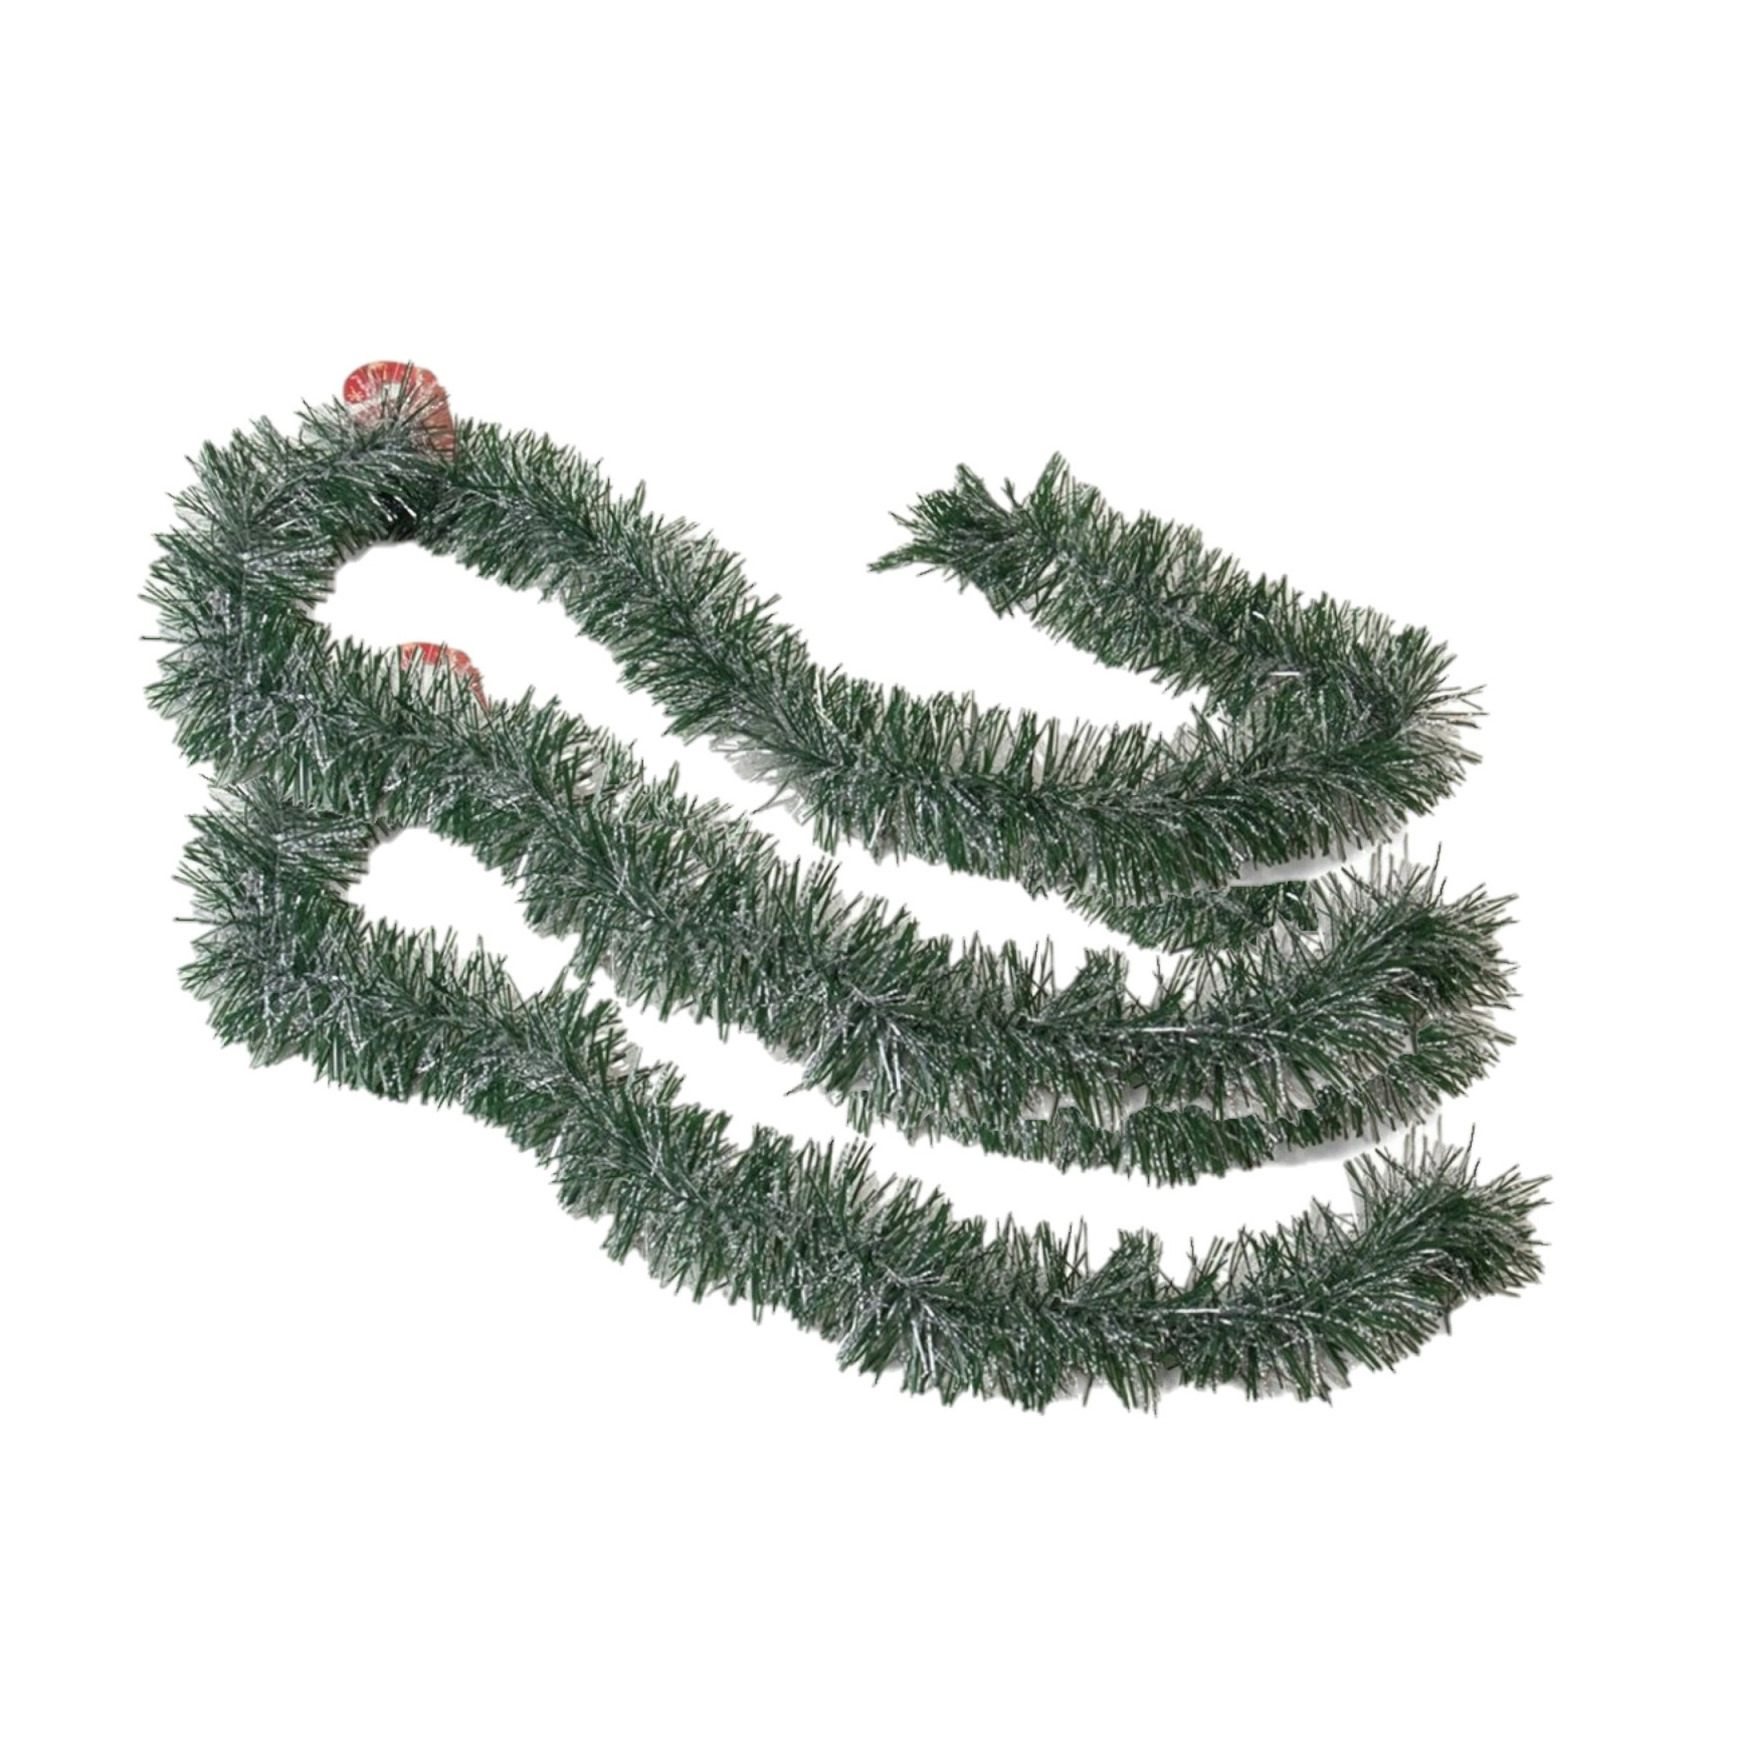 2x stuks kerstboom folie slingers-lametta guirlandes van 180 x 7 cm in de kleur groen met sneeuw